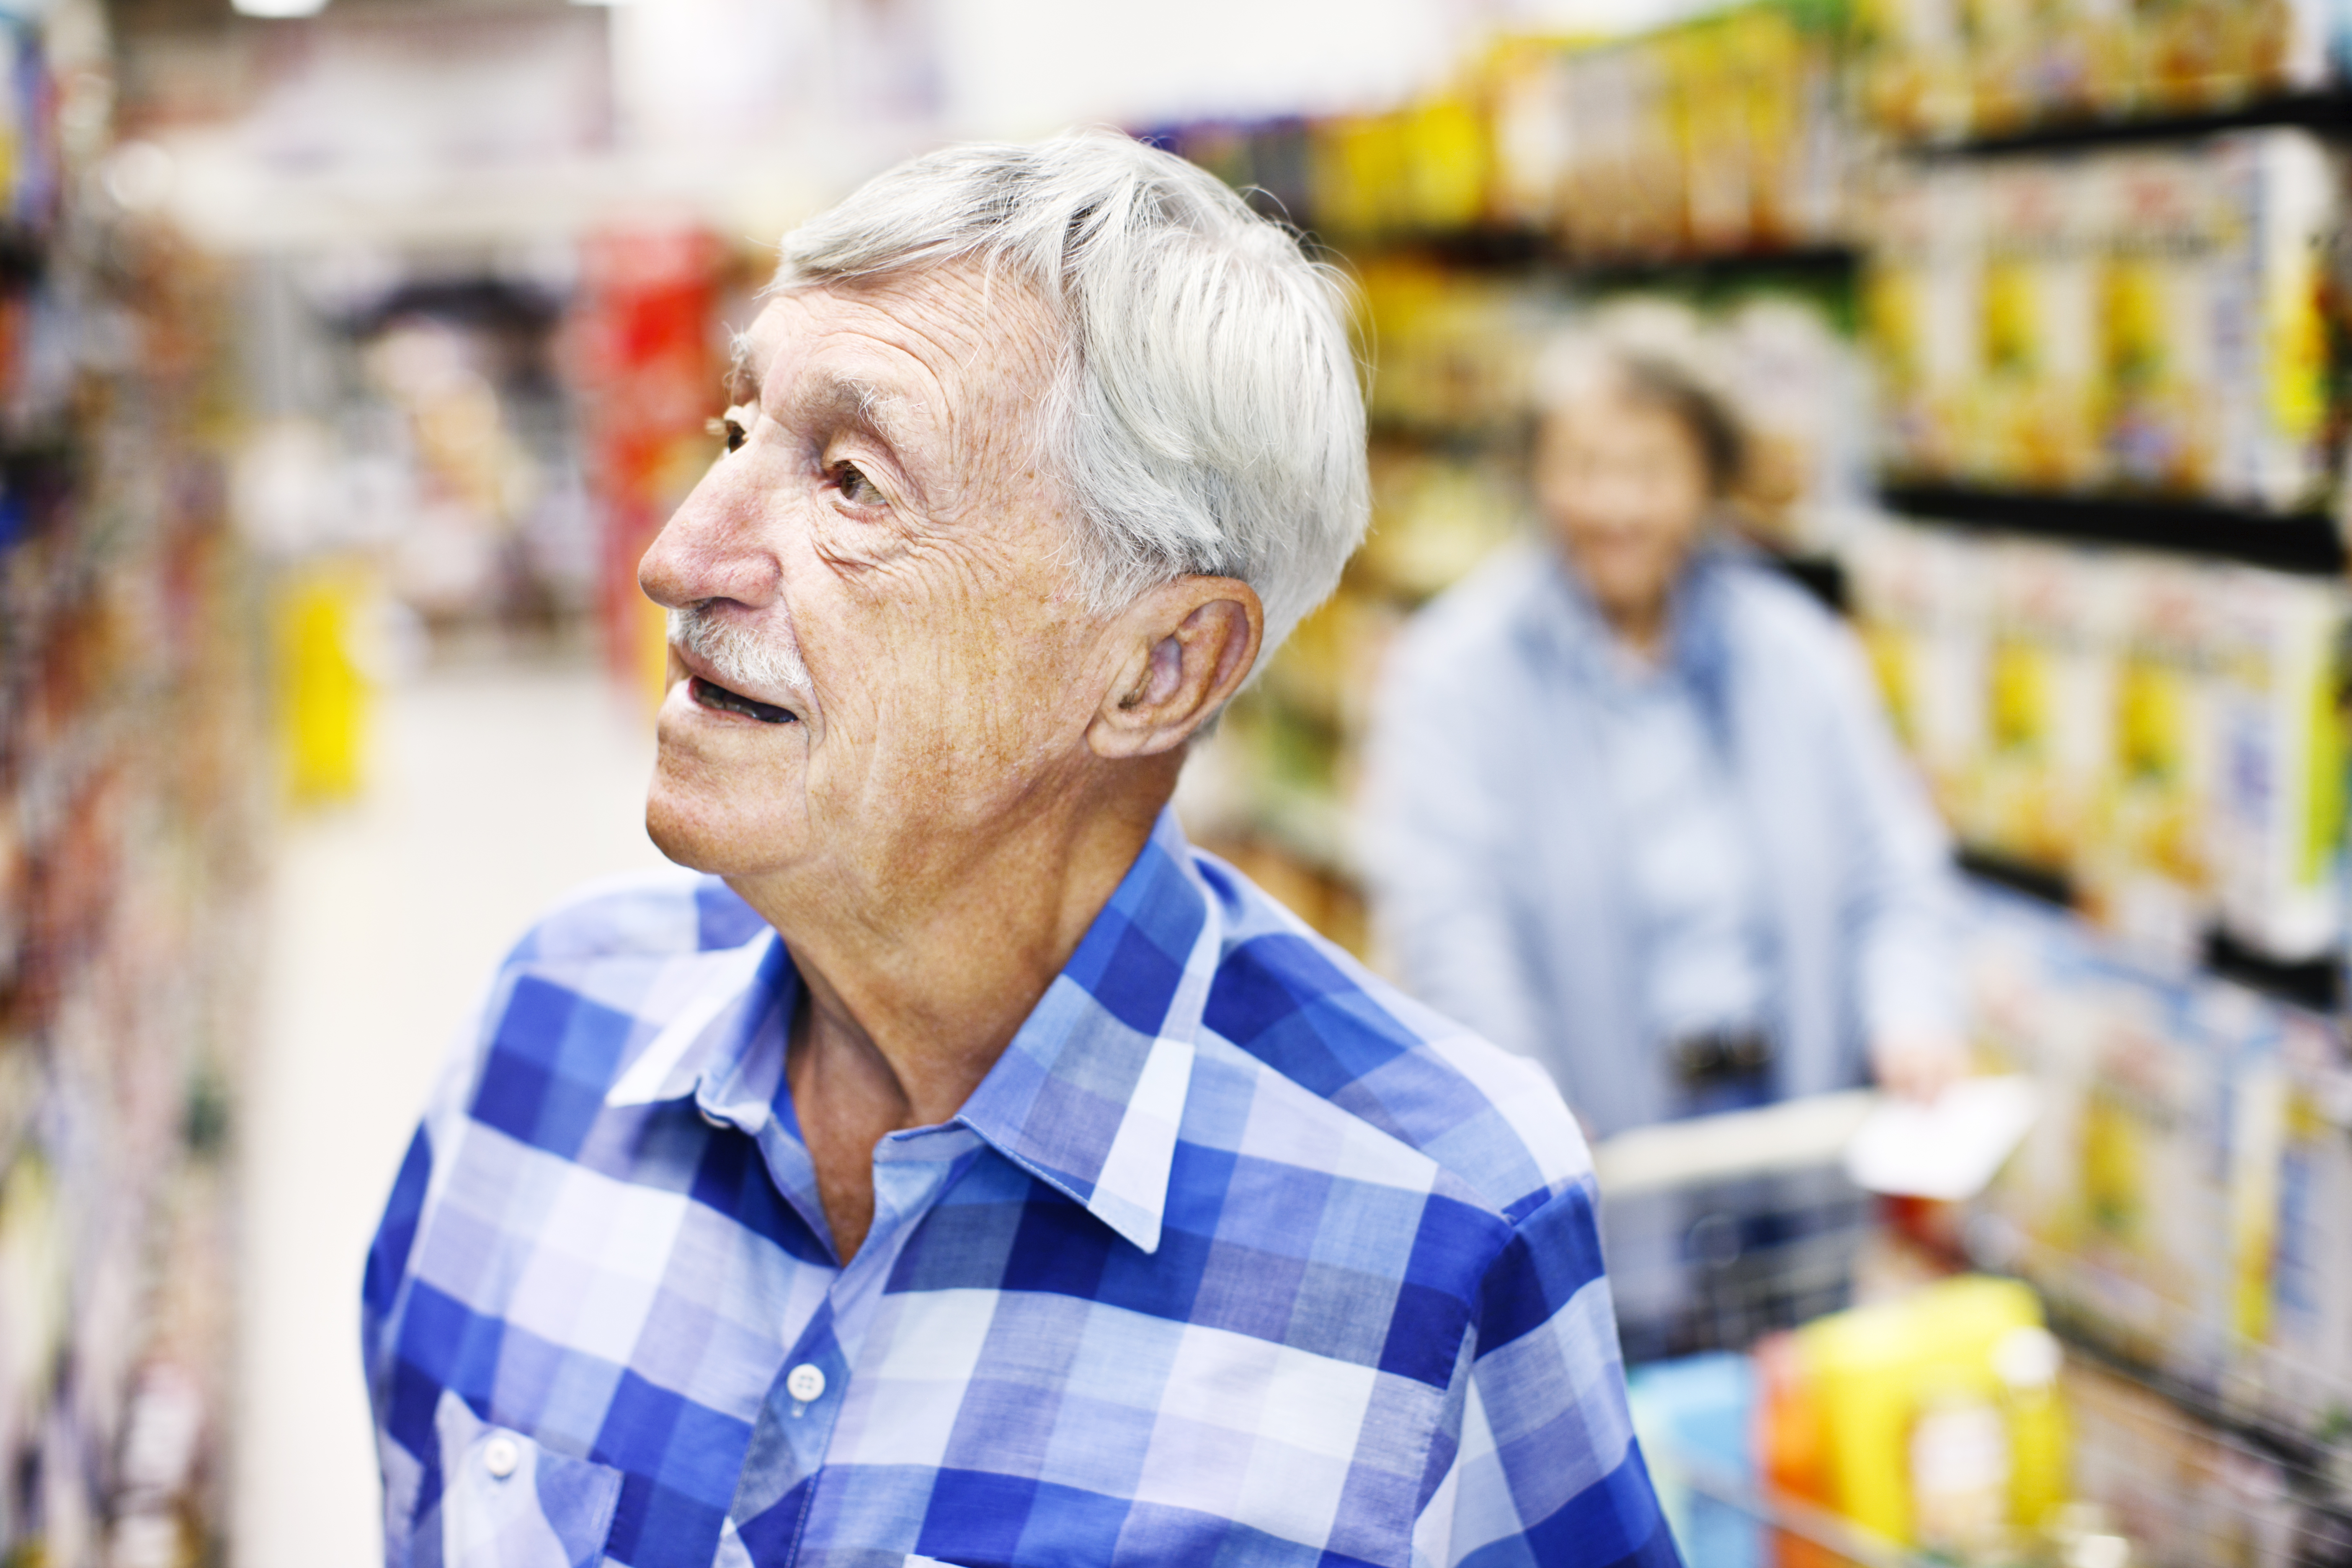 Serious senior man checks supermarket shelves seeking something